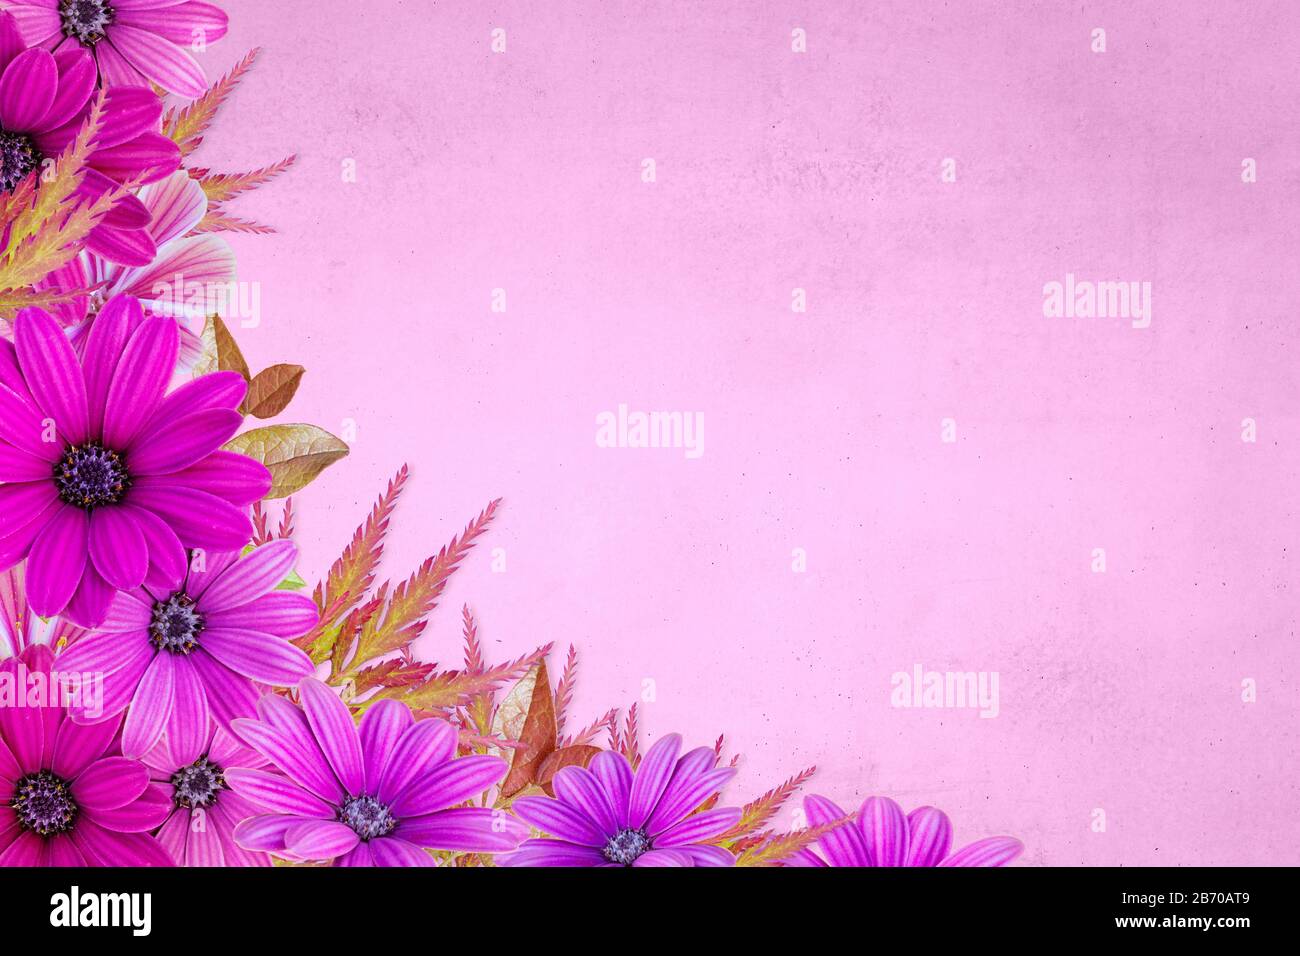 Blumenmuster mit rosafarbenem Blumenrand auf pinkfarbenem Hintergrund. Blumenhintergrund Springtime Stockfoto